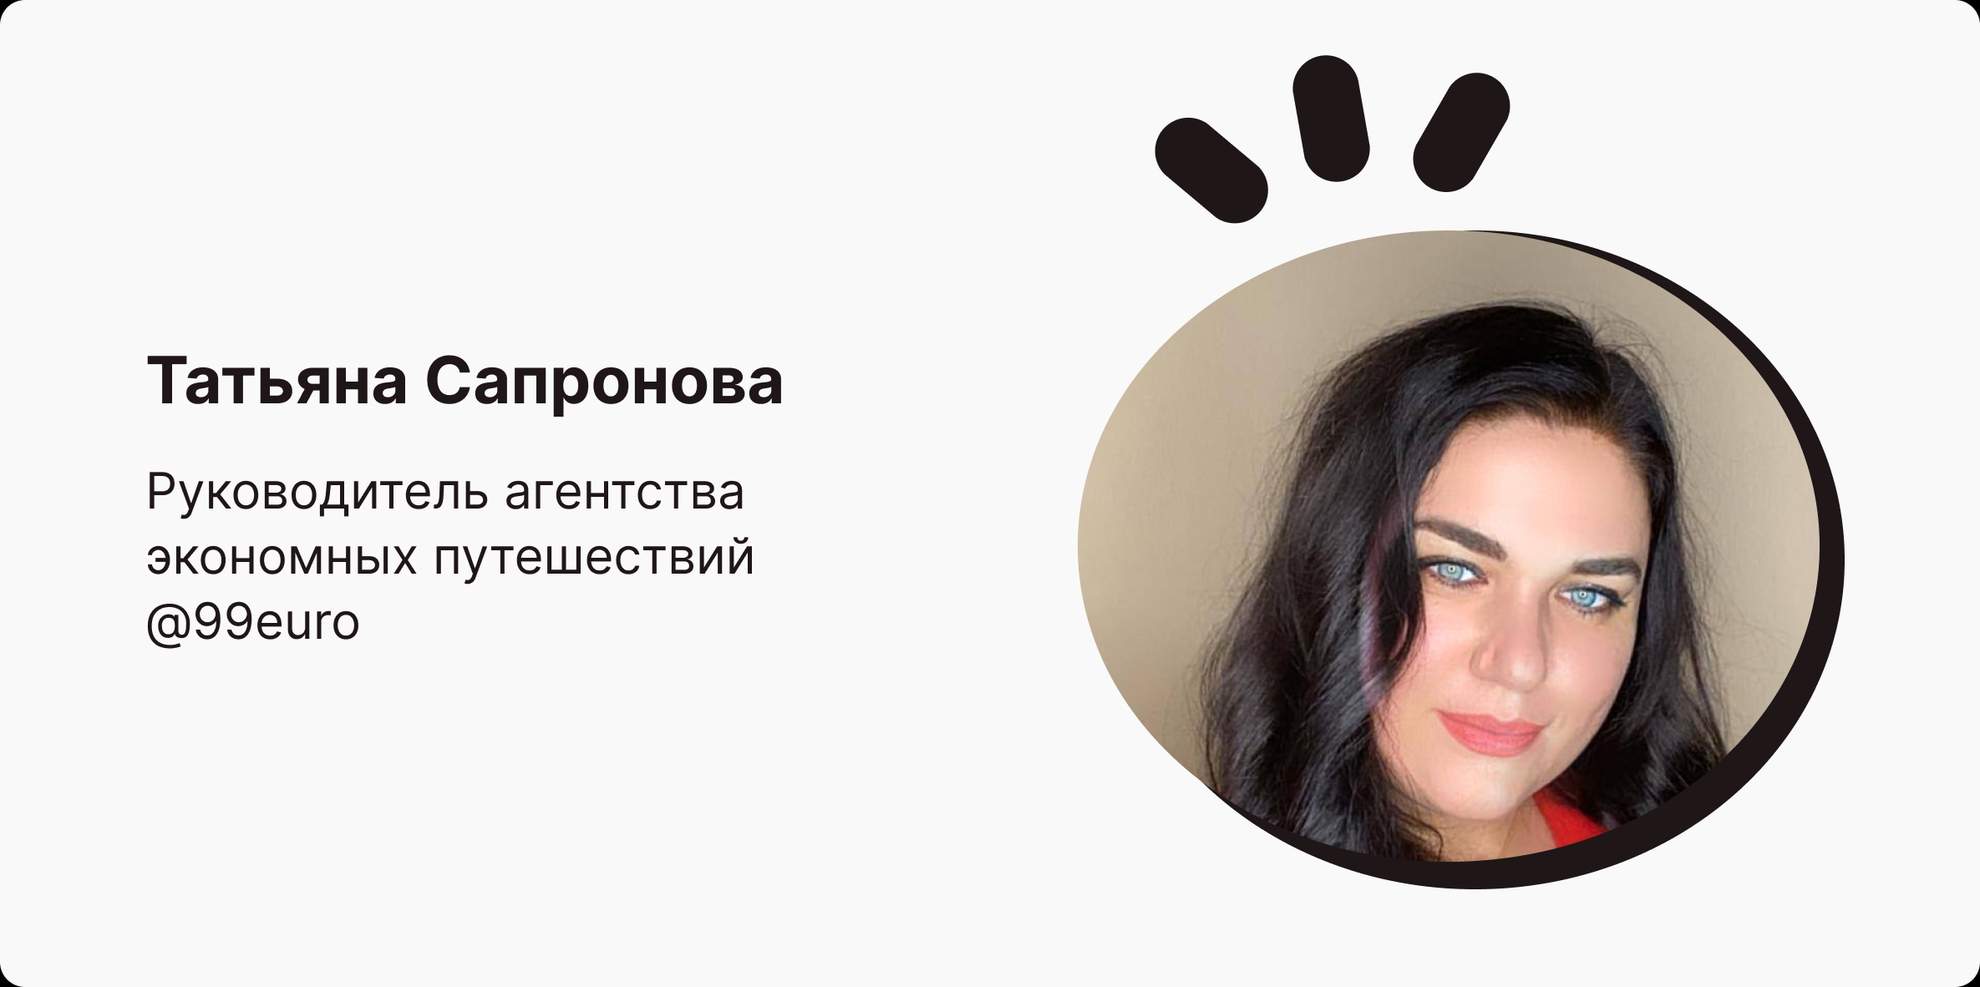 Татьяна Сапронова, руководитель агентства путешествий